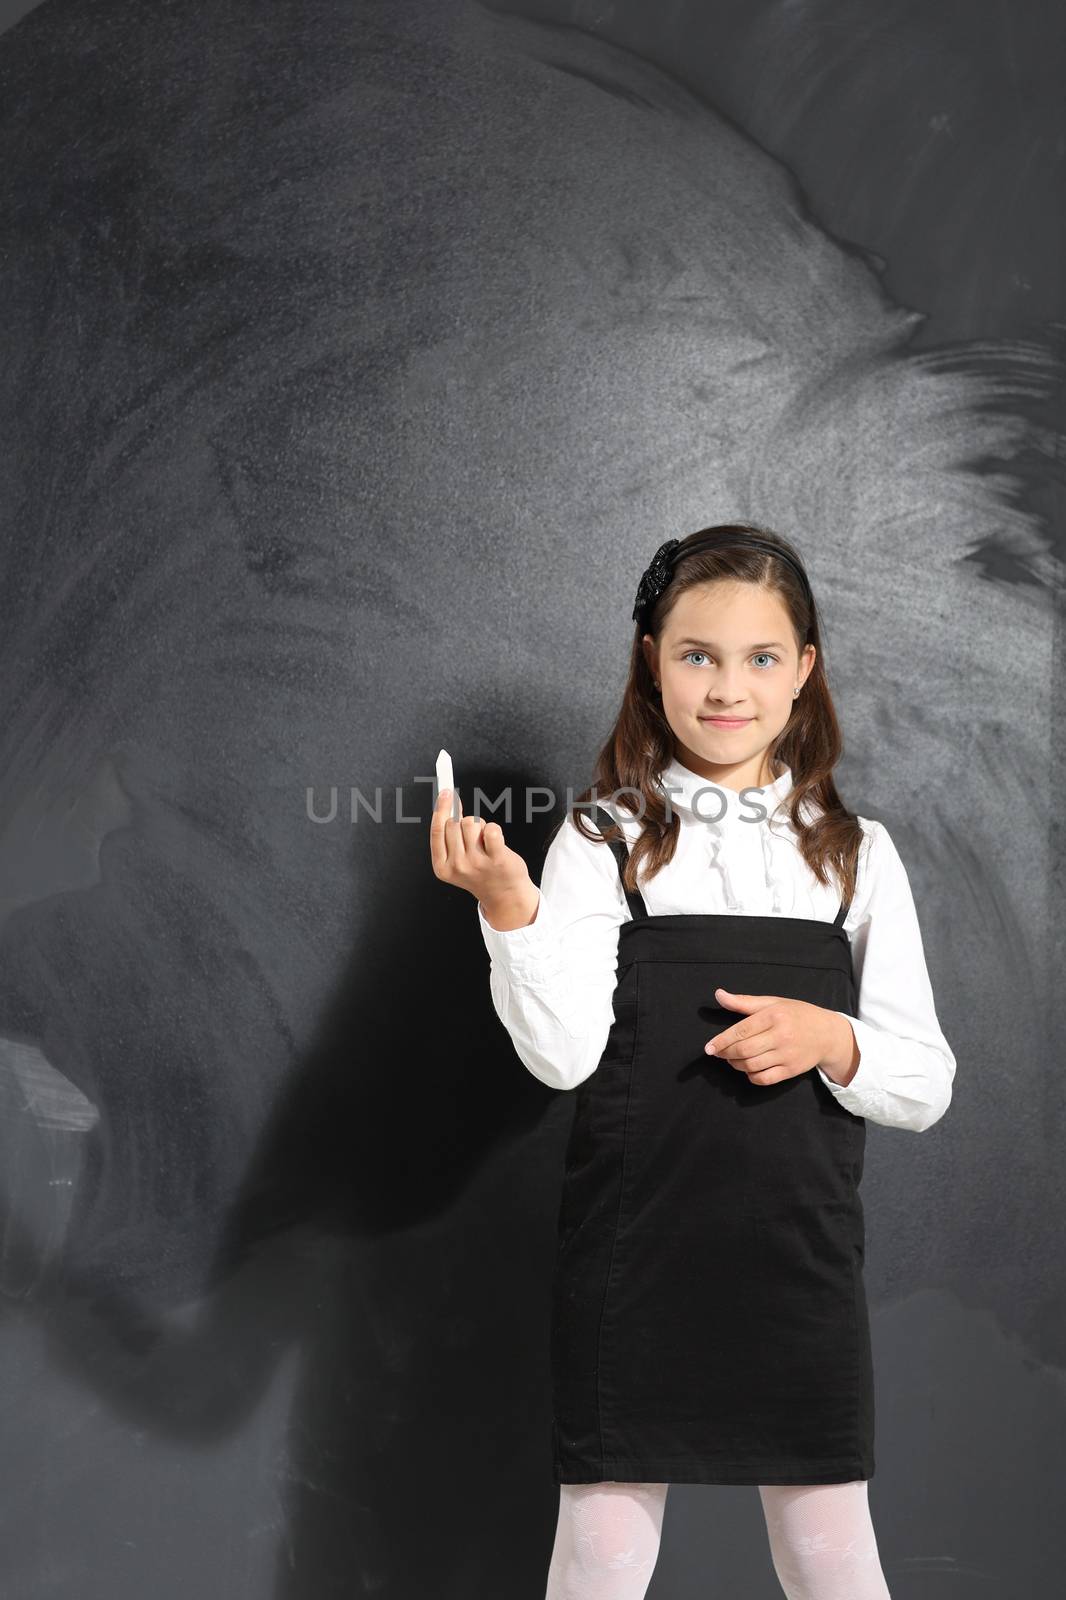 Cute little girl standing by a black school board by robert_przybysz